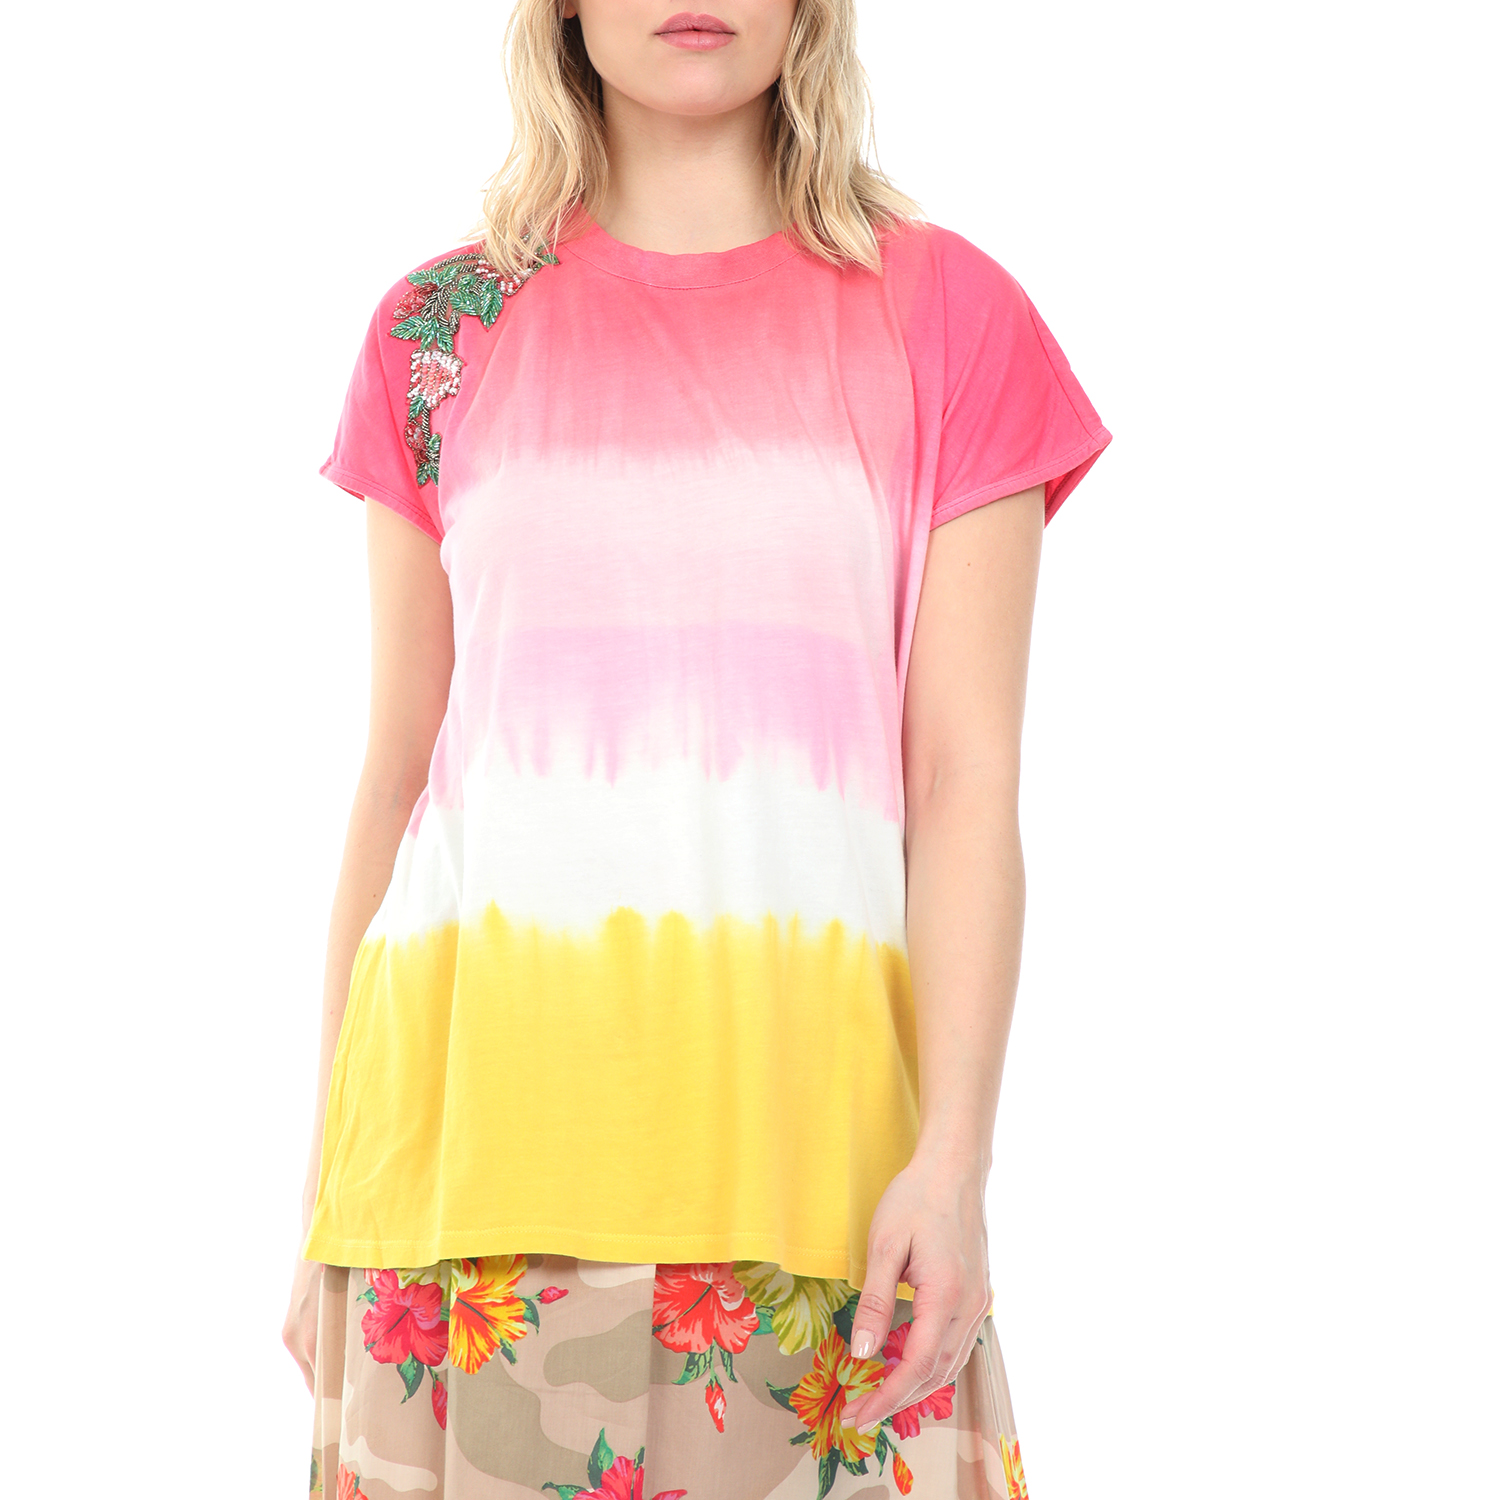 TWIN-SET Γυναικεία μπλούζα TWIN-SET ροζ κίτρινη